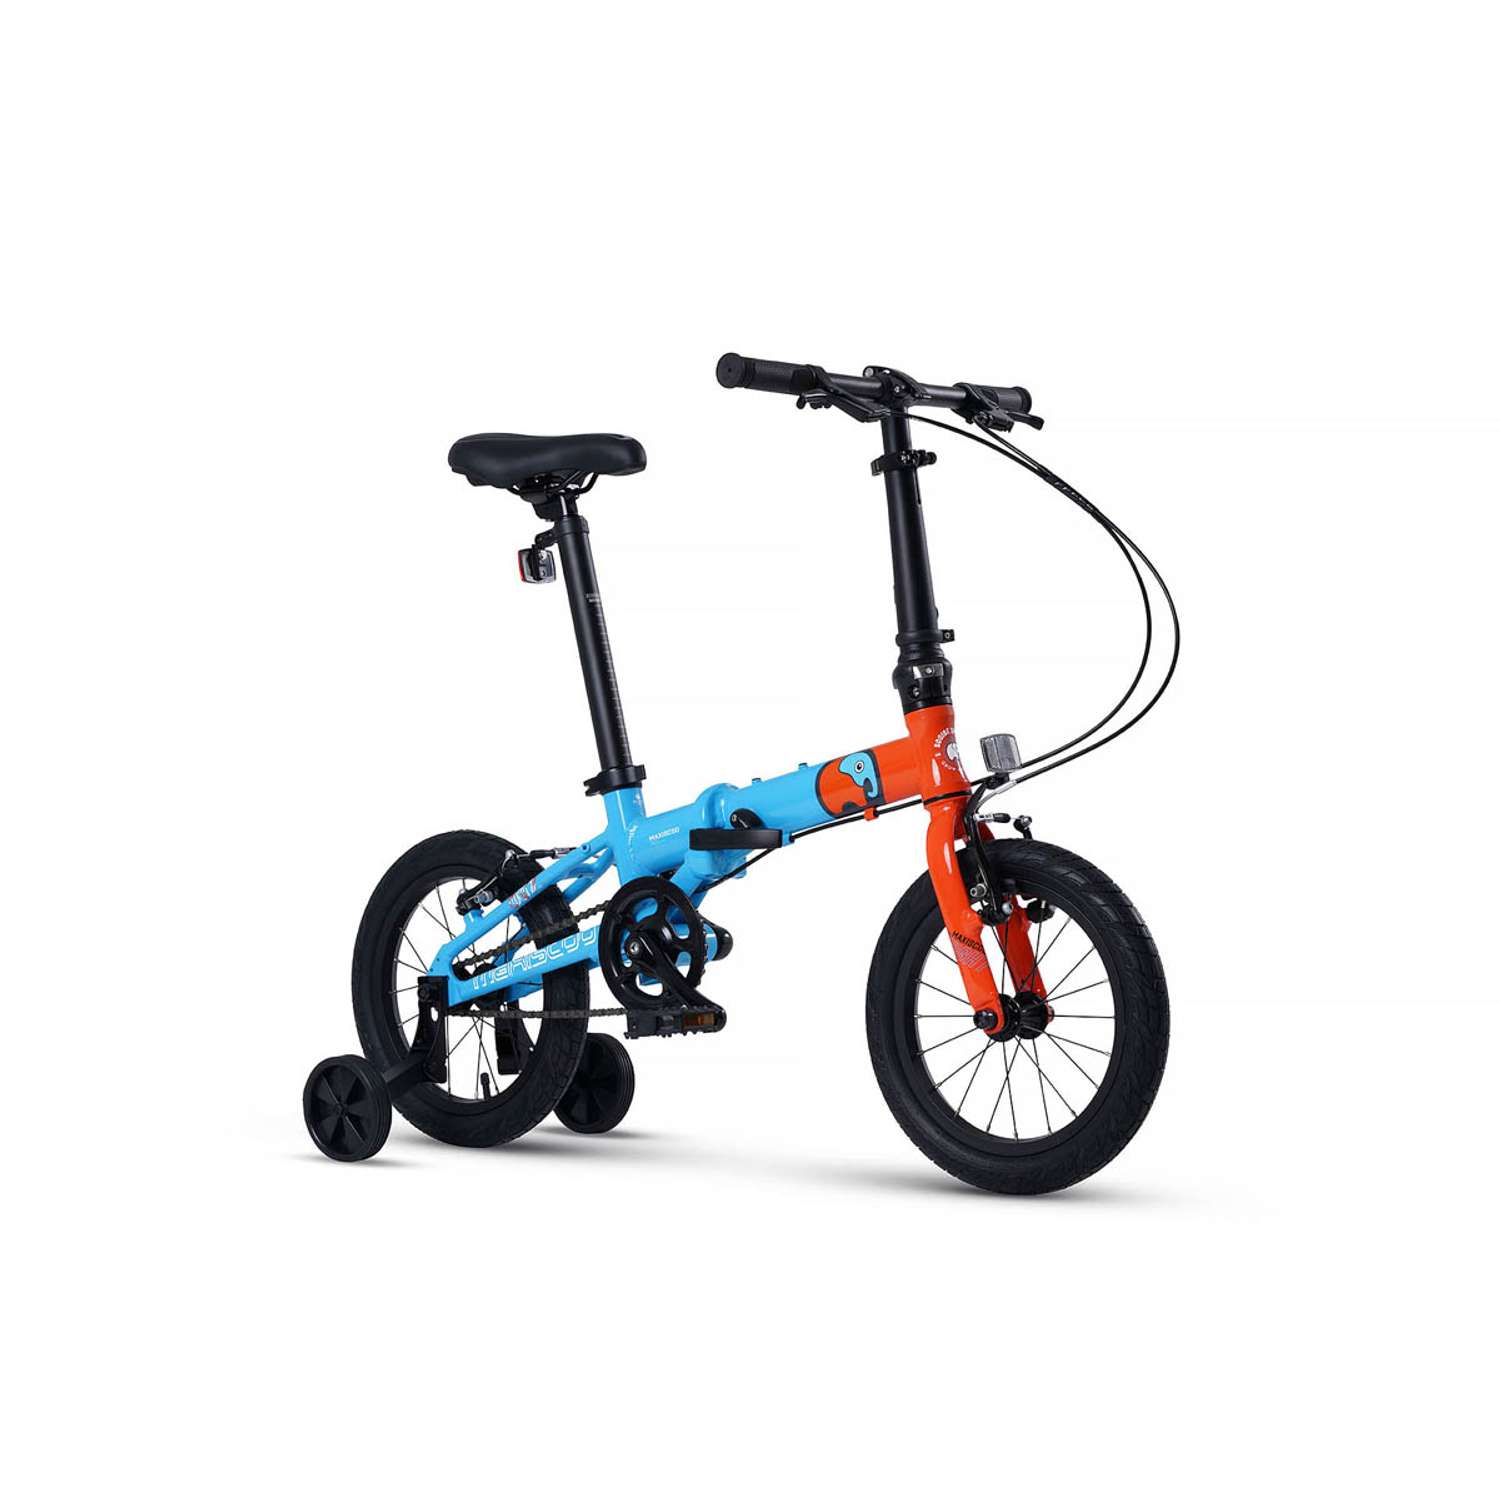 Велосипед Детский Складной Maxiscoo S007 pro 14 синий с оранжевым - фото 2